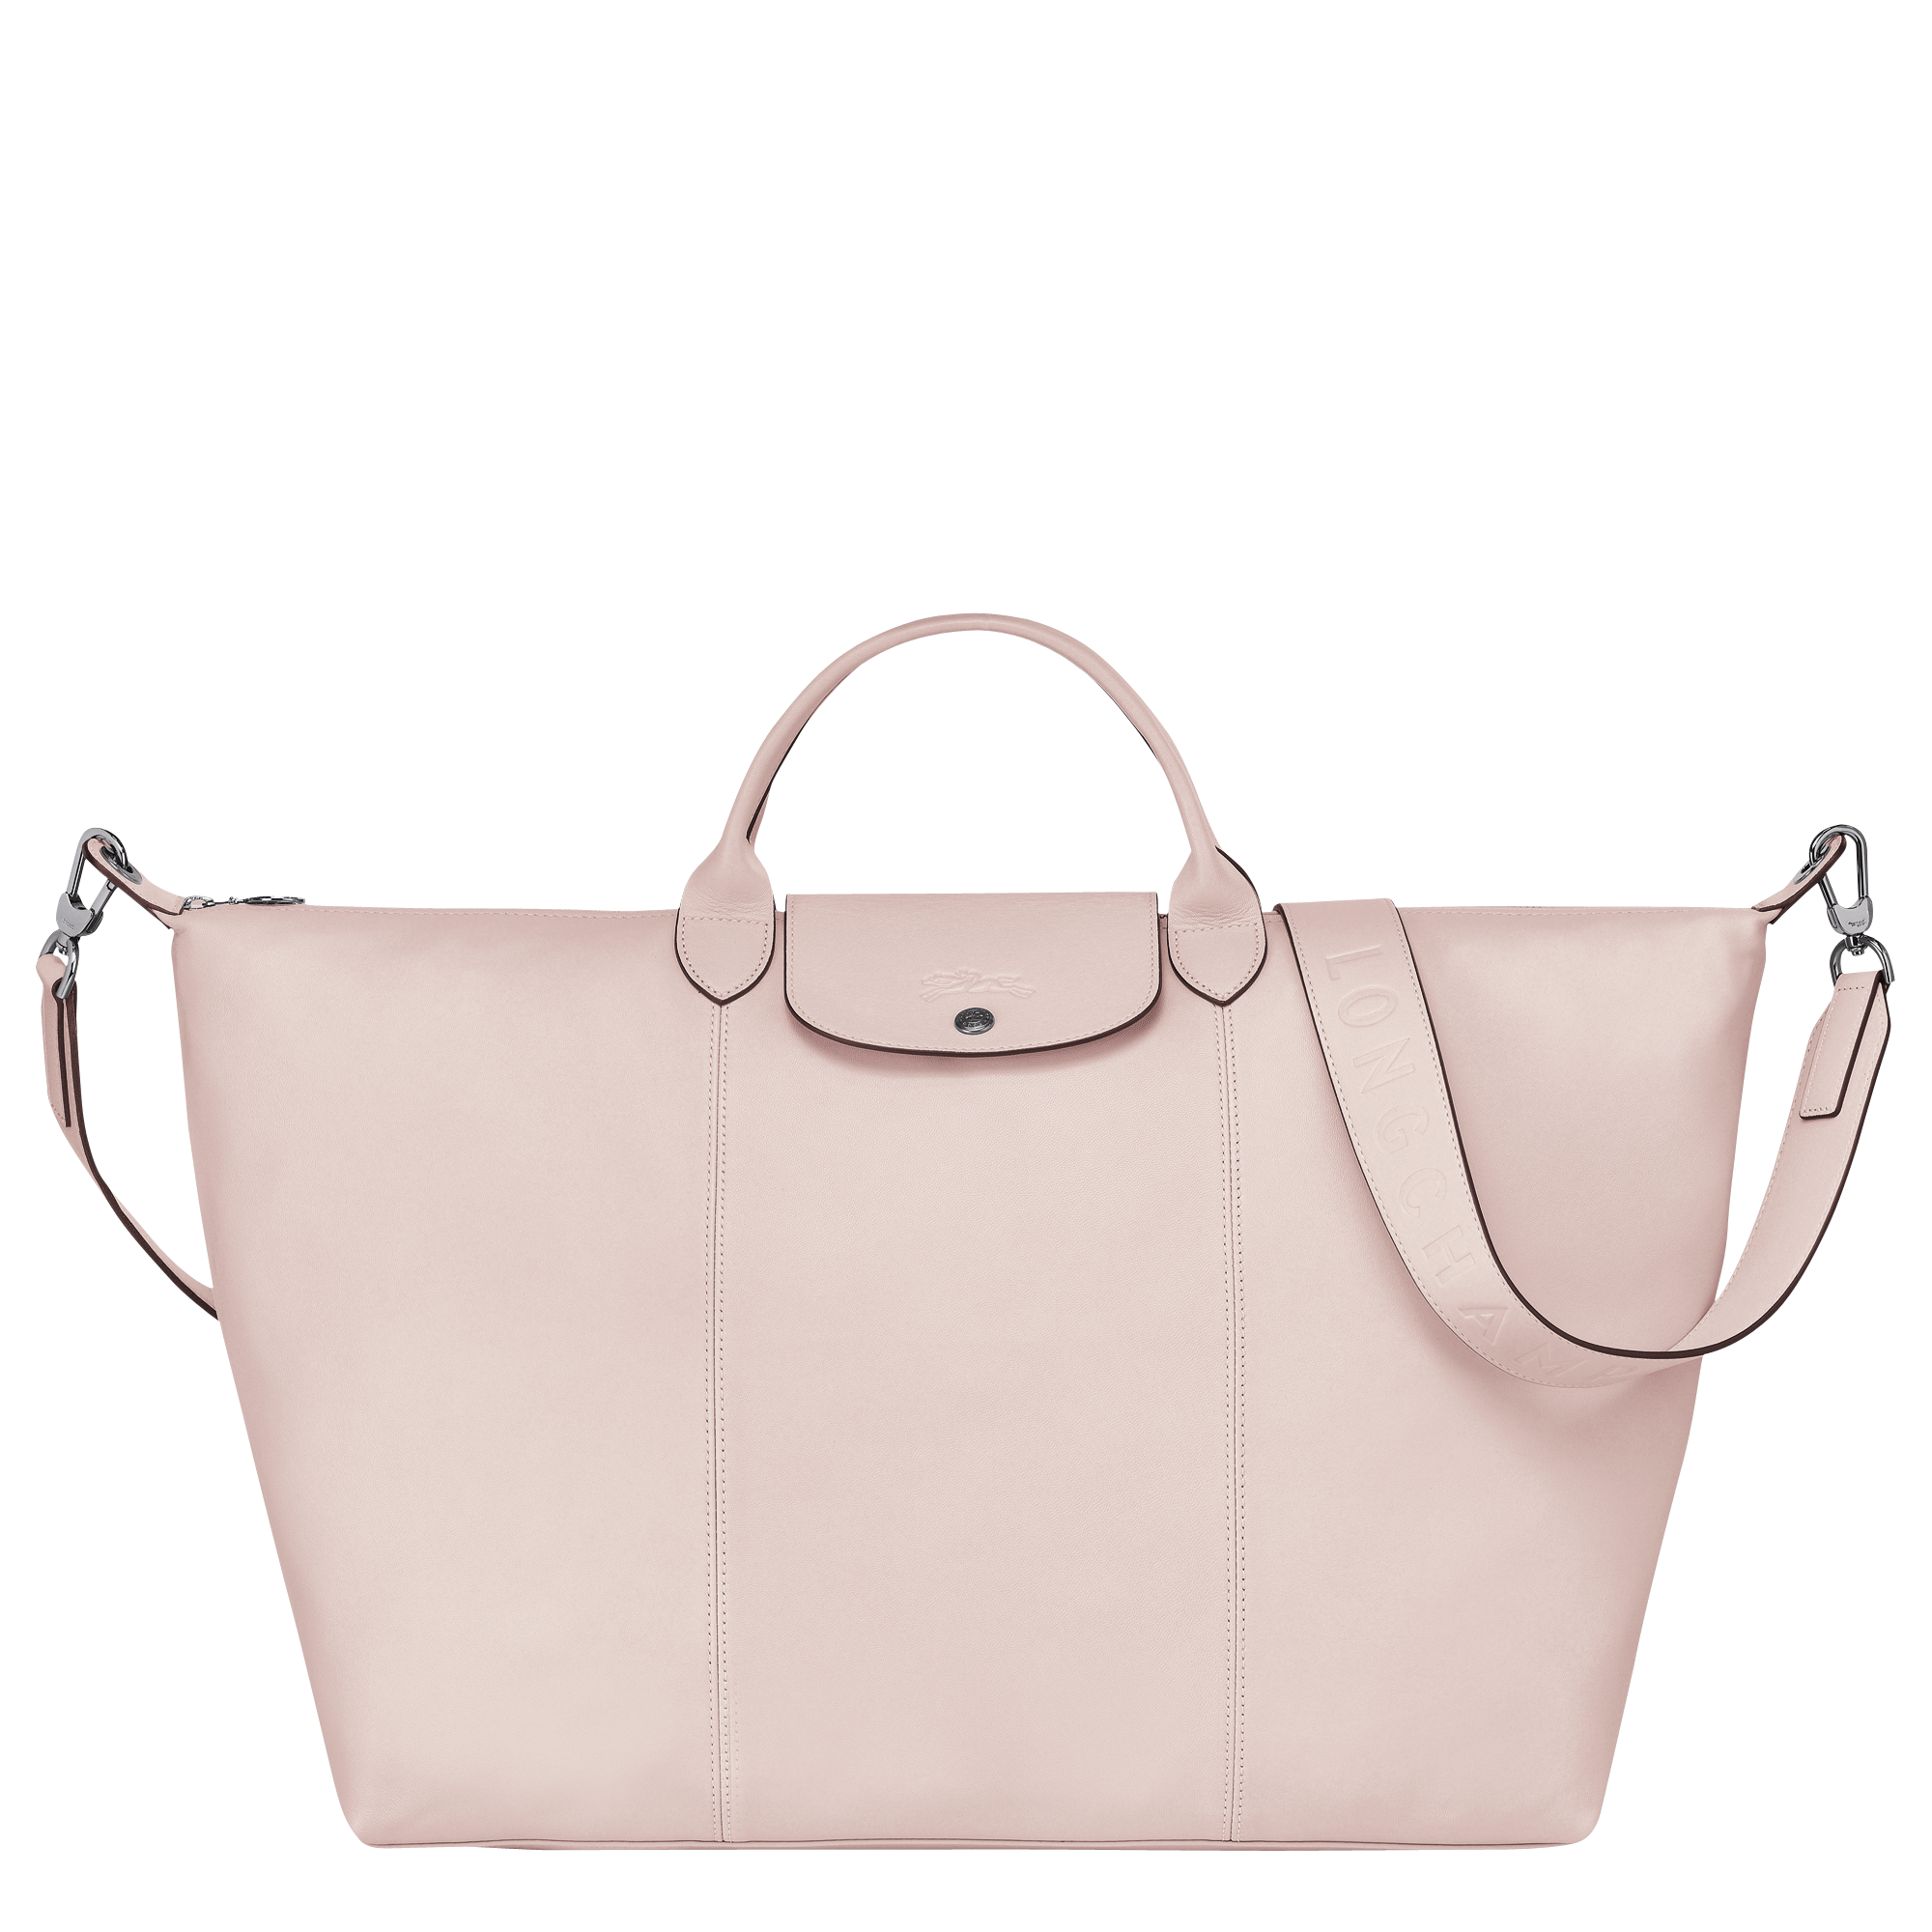 Travel bag L Le Pliage Cuir Pale pink 